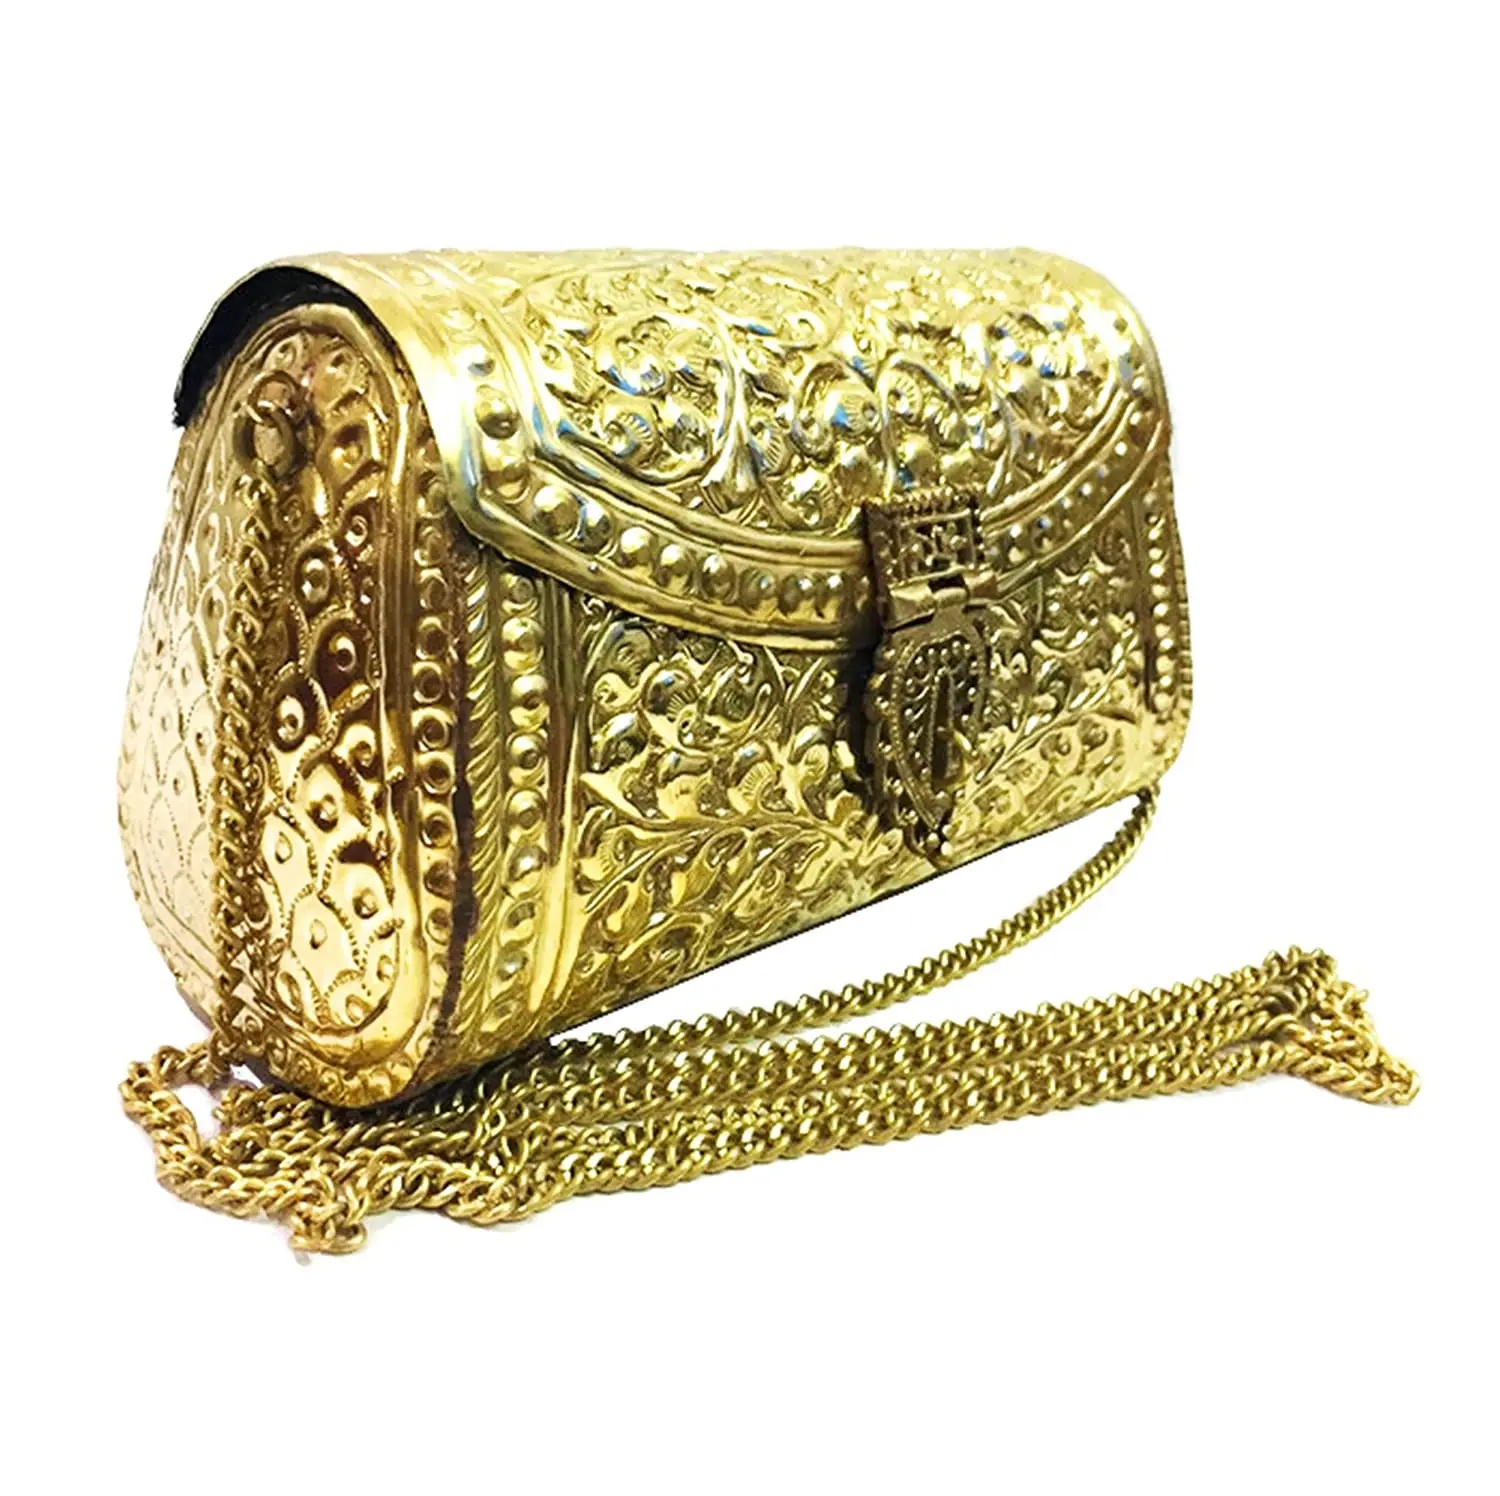 सर्वश्रेष्ठ विक्रेता शादी दुल्हन हैंडबैग धातु सोना चांदी मढ़वाया गोफन बैग हस्तनिर्मित धातु से बना चंगुल भारत से निर्यातक